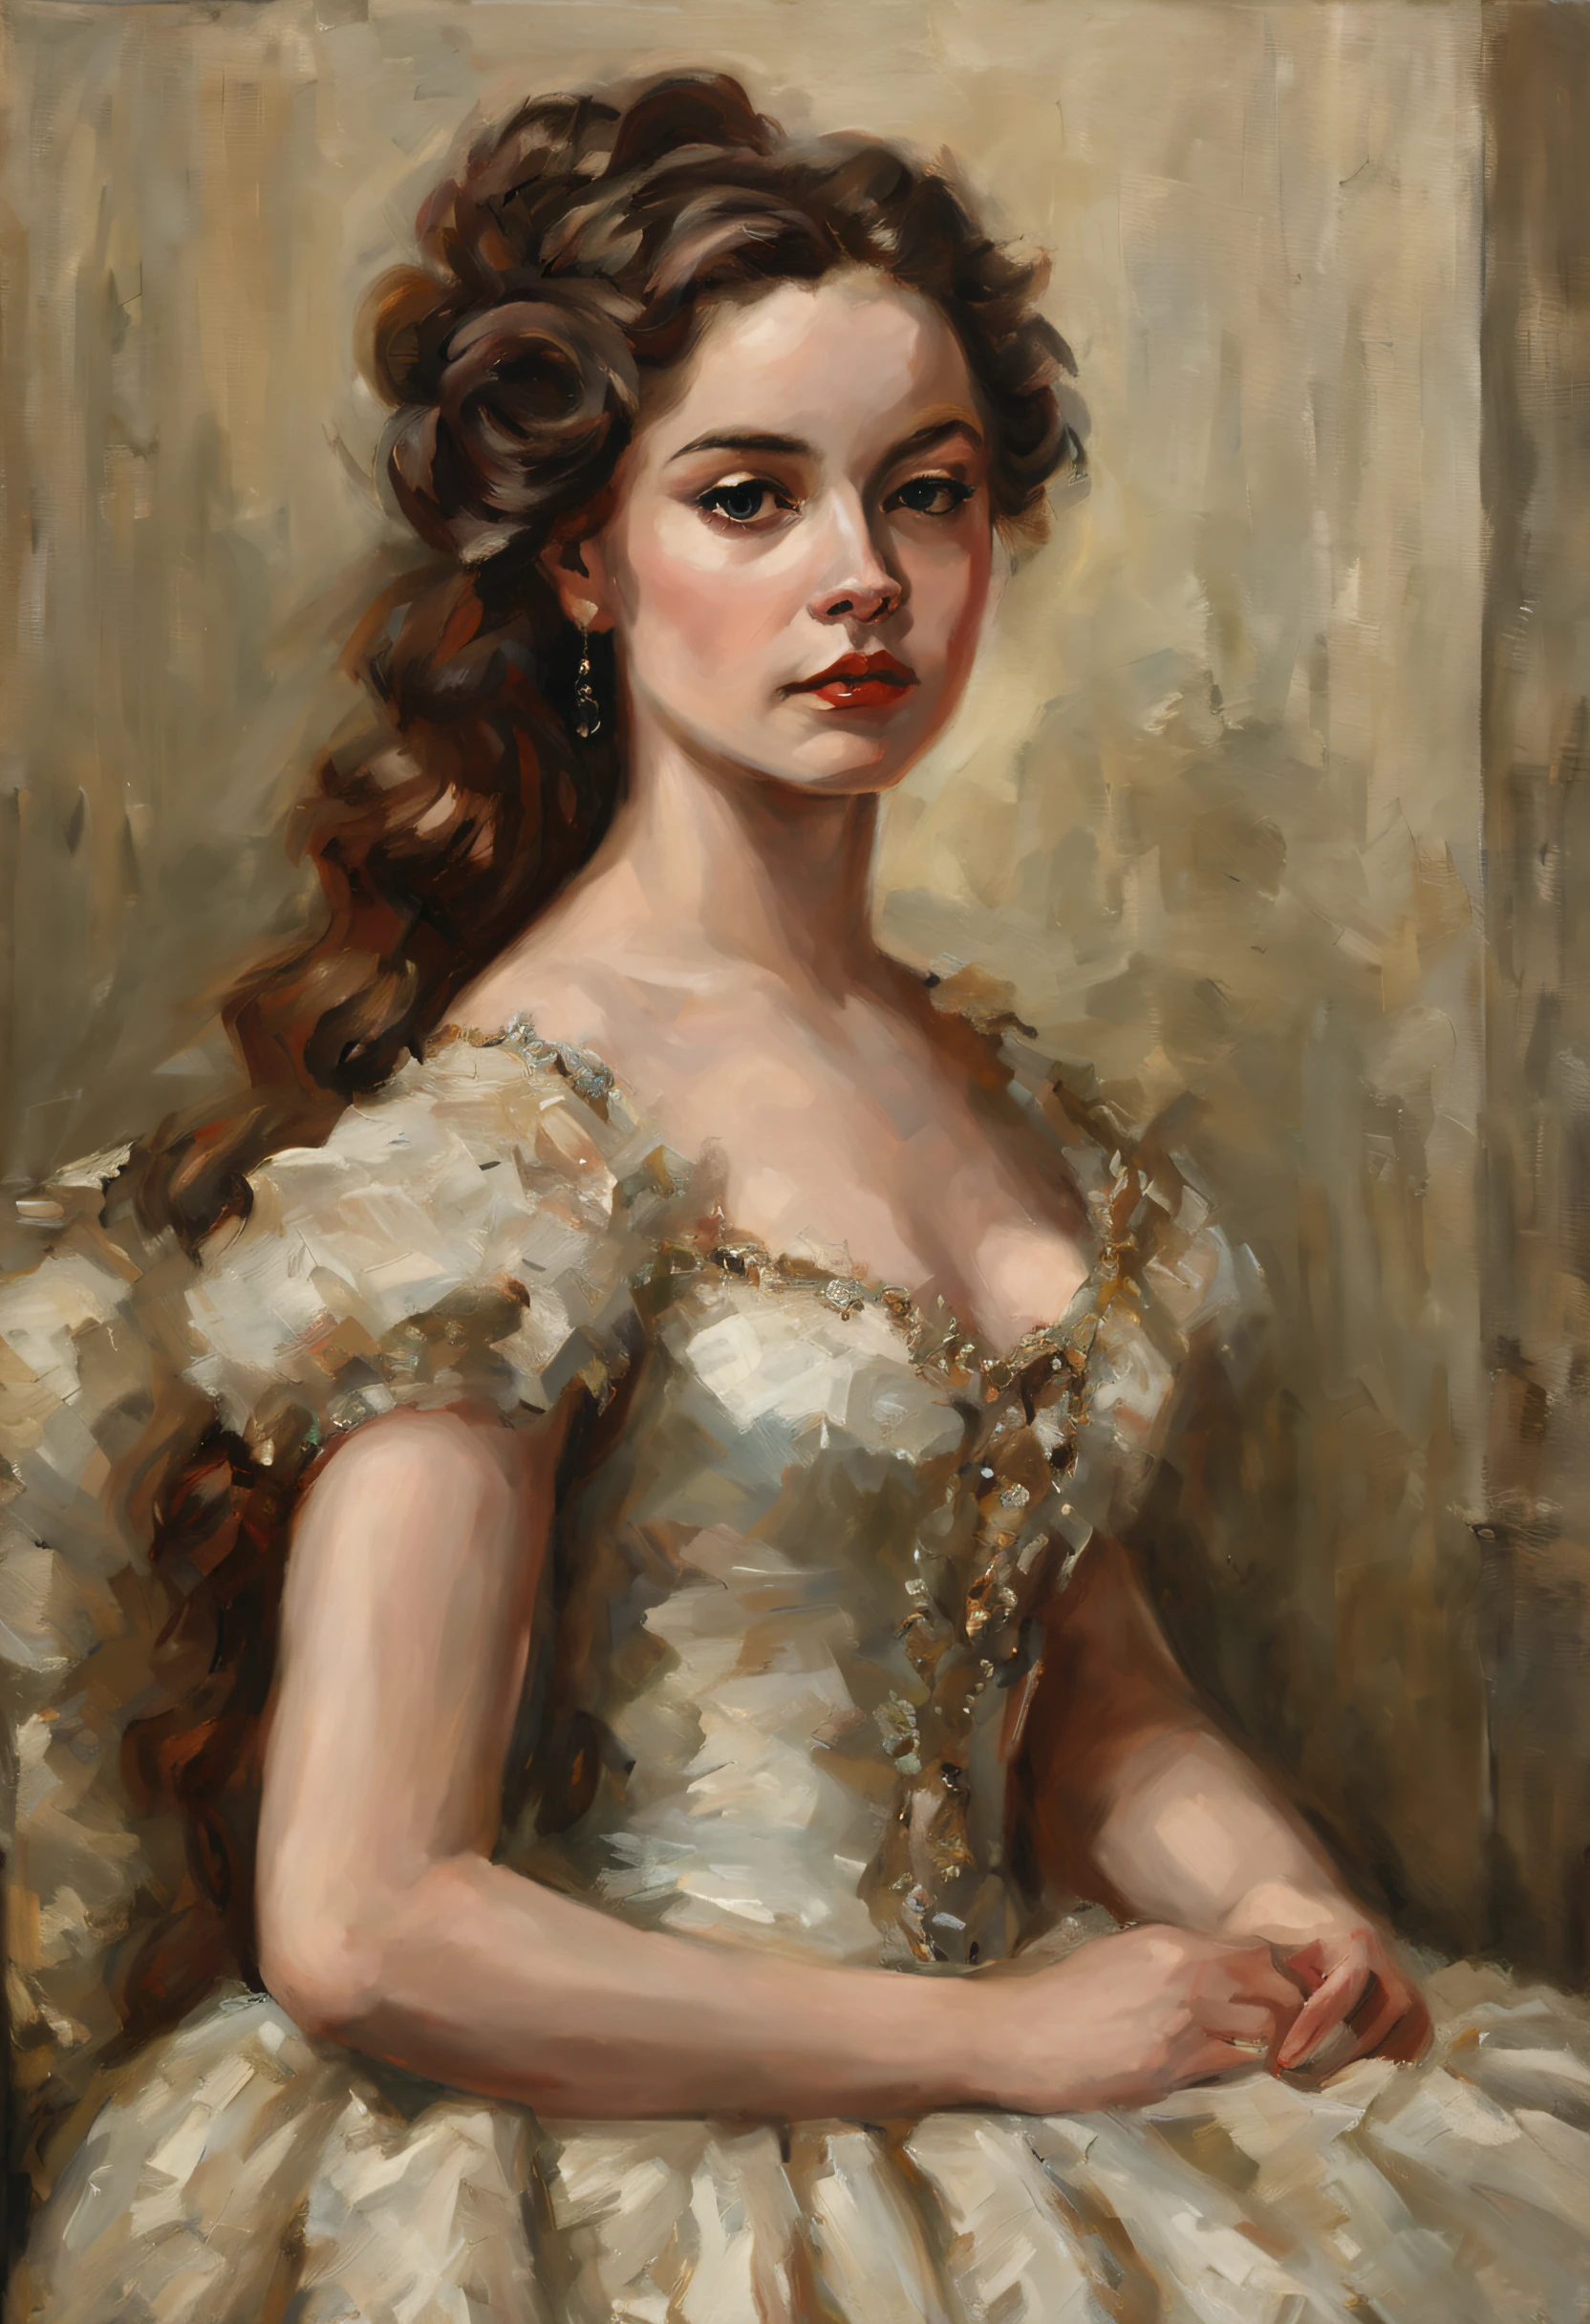 لوحة زيتية لامرأة شابة جميلة بأسلوب فيليب دي لازلو, فتاة في ثوب الكرة, شعر الفتاة الفاخر